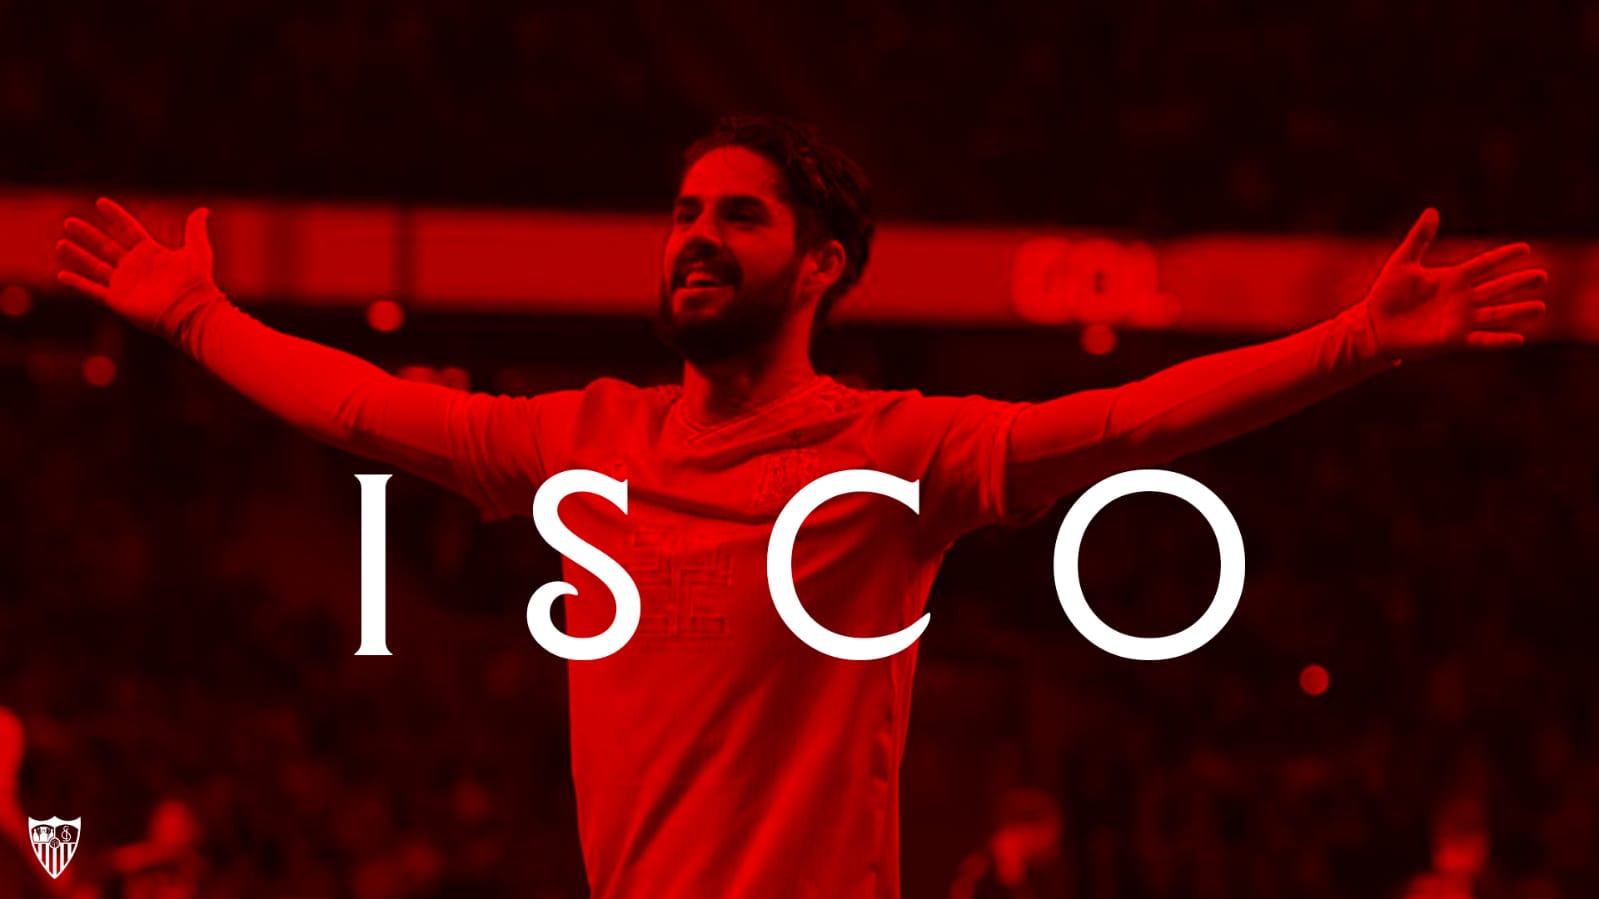 Sevilla konfirmon marrëveshjen për transferimin e Iscos